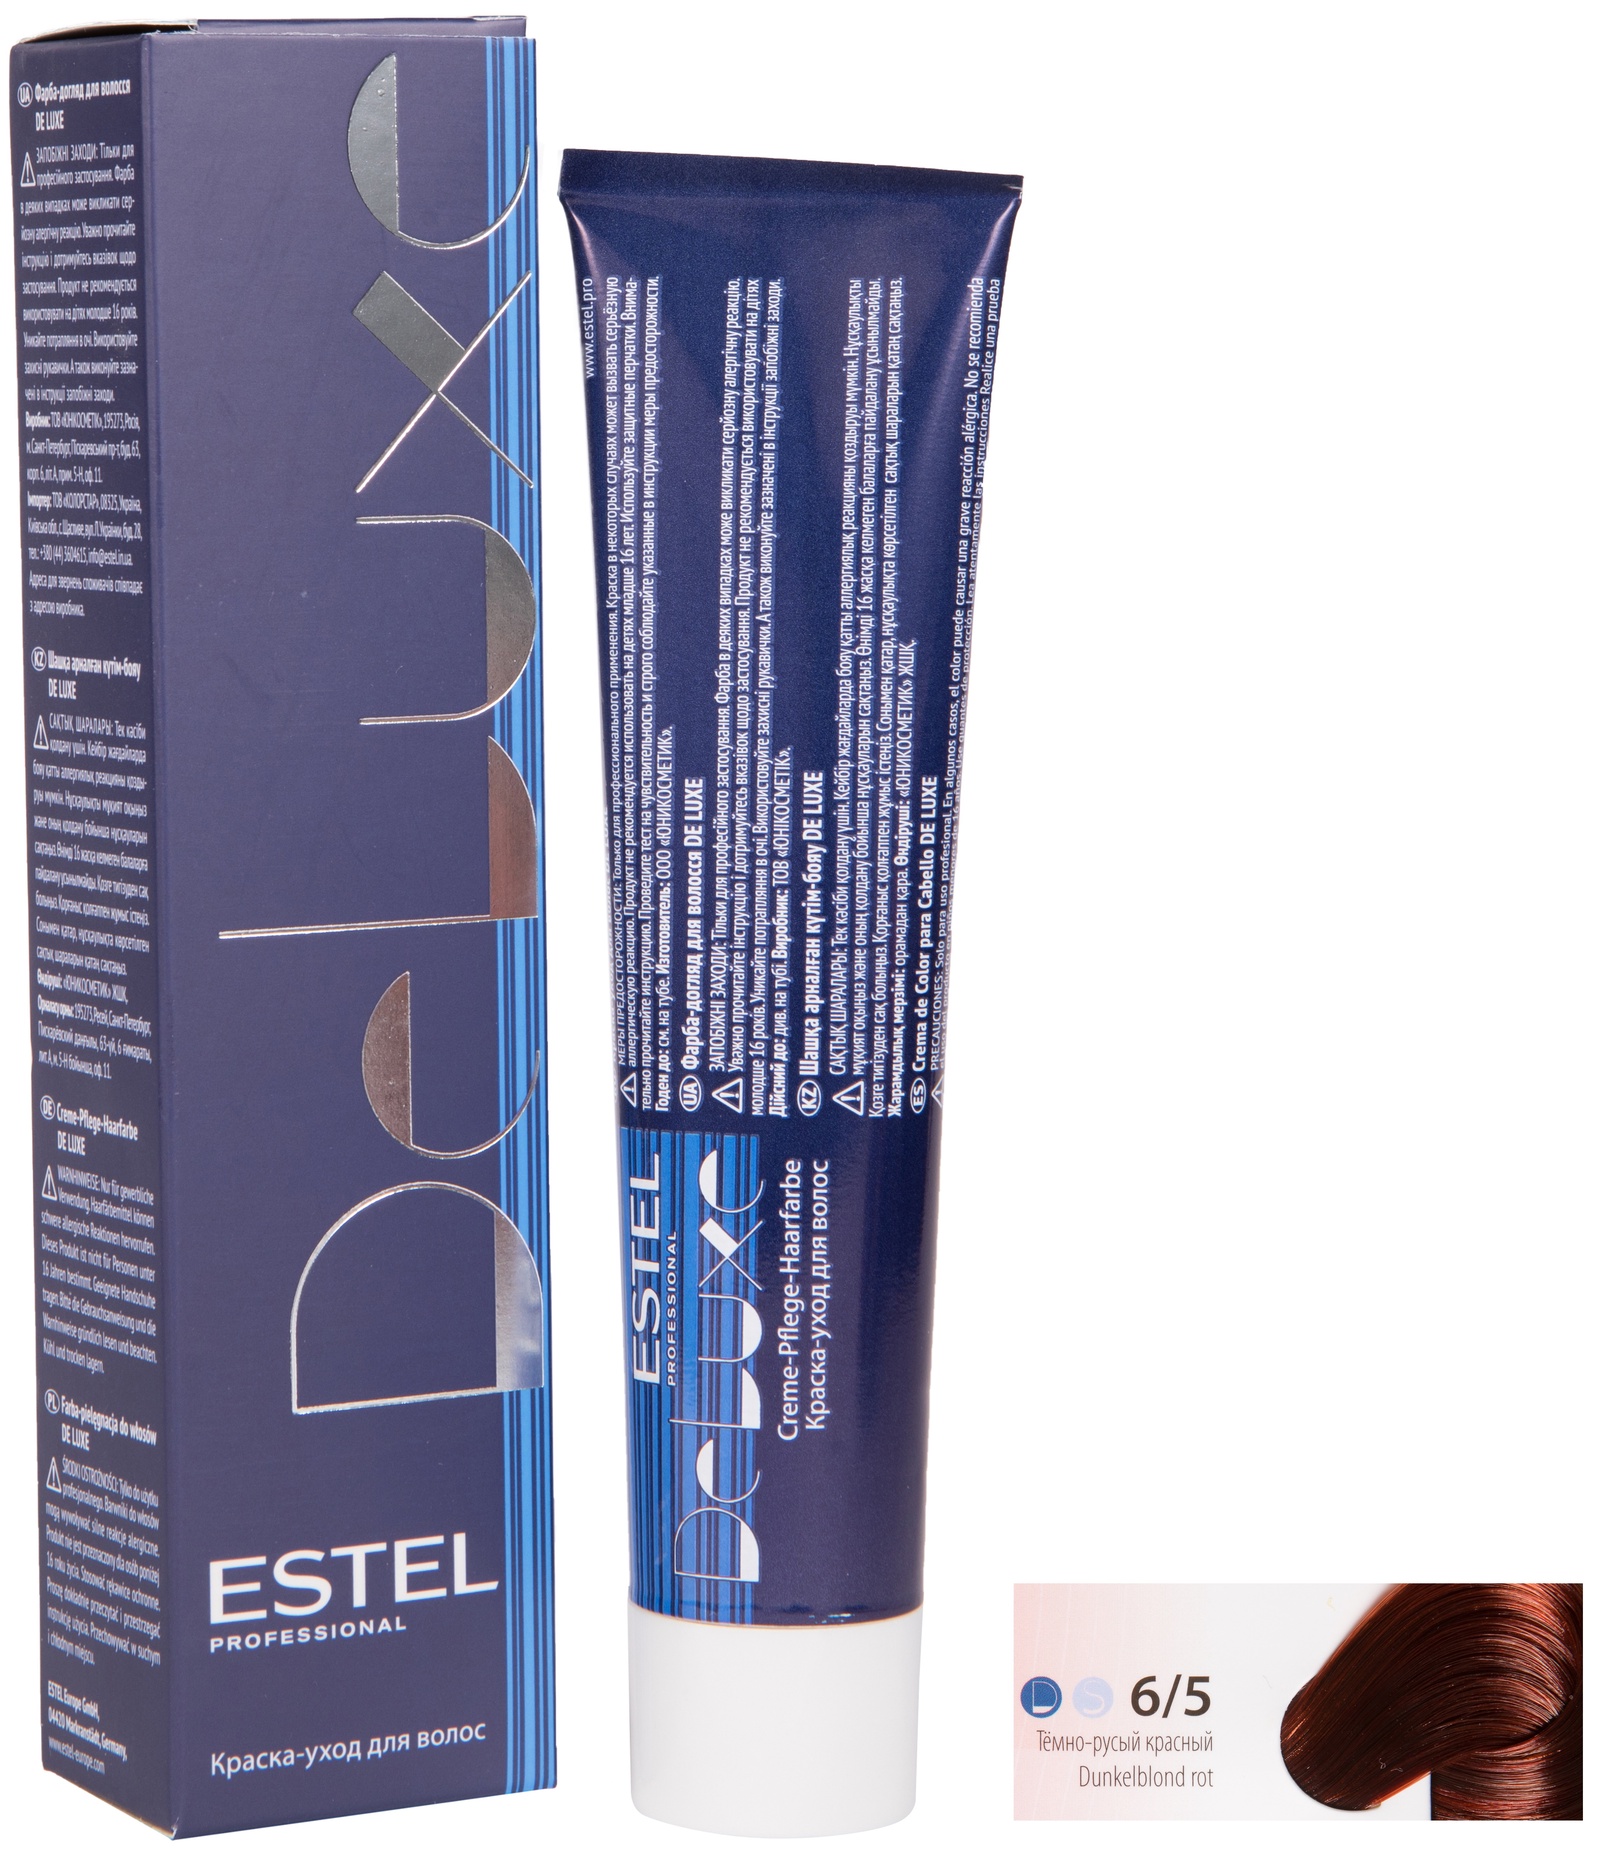 Краска для волос ESTEL PROFESSIONAL 6/5 DE LUXE краска-уход для окрашивания волос, темно-русый красный 60 мл